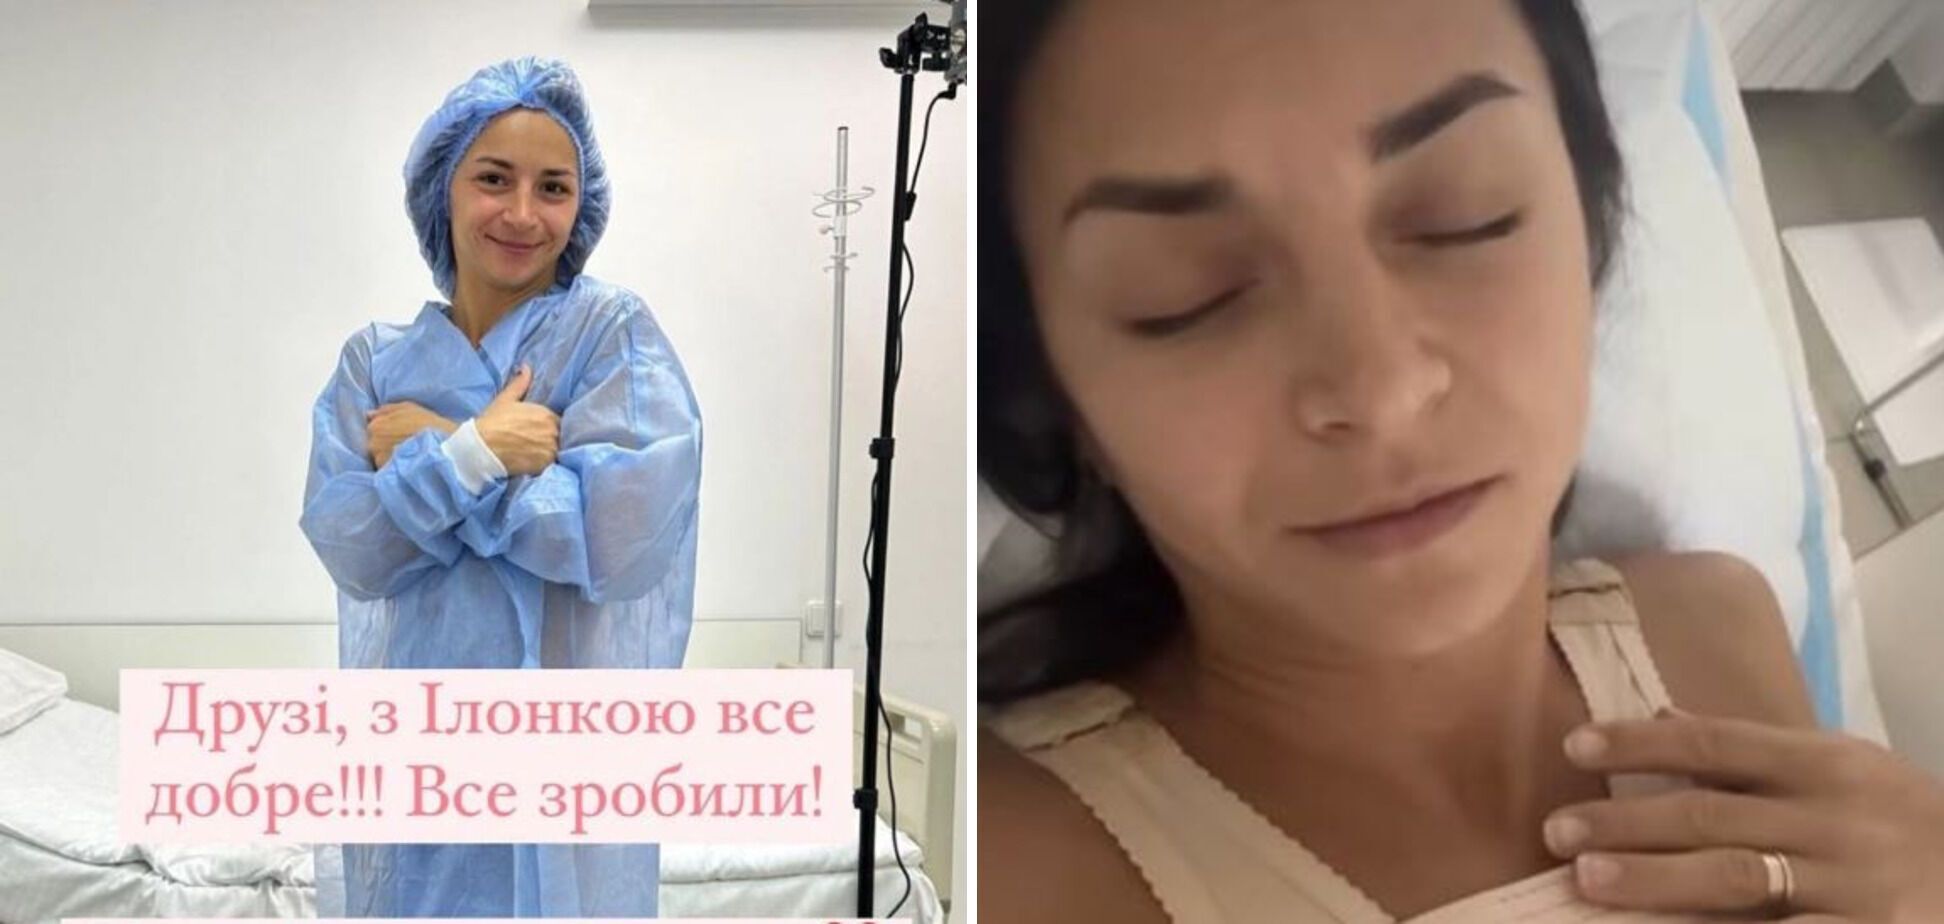 "Нерви не витримують". Чому Ілона Гвоздьова, яка збільшила груди, досі не показала результатів операції чоловіку, а на людях з’являється у закритих сукнях